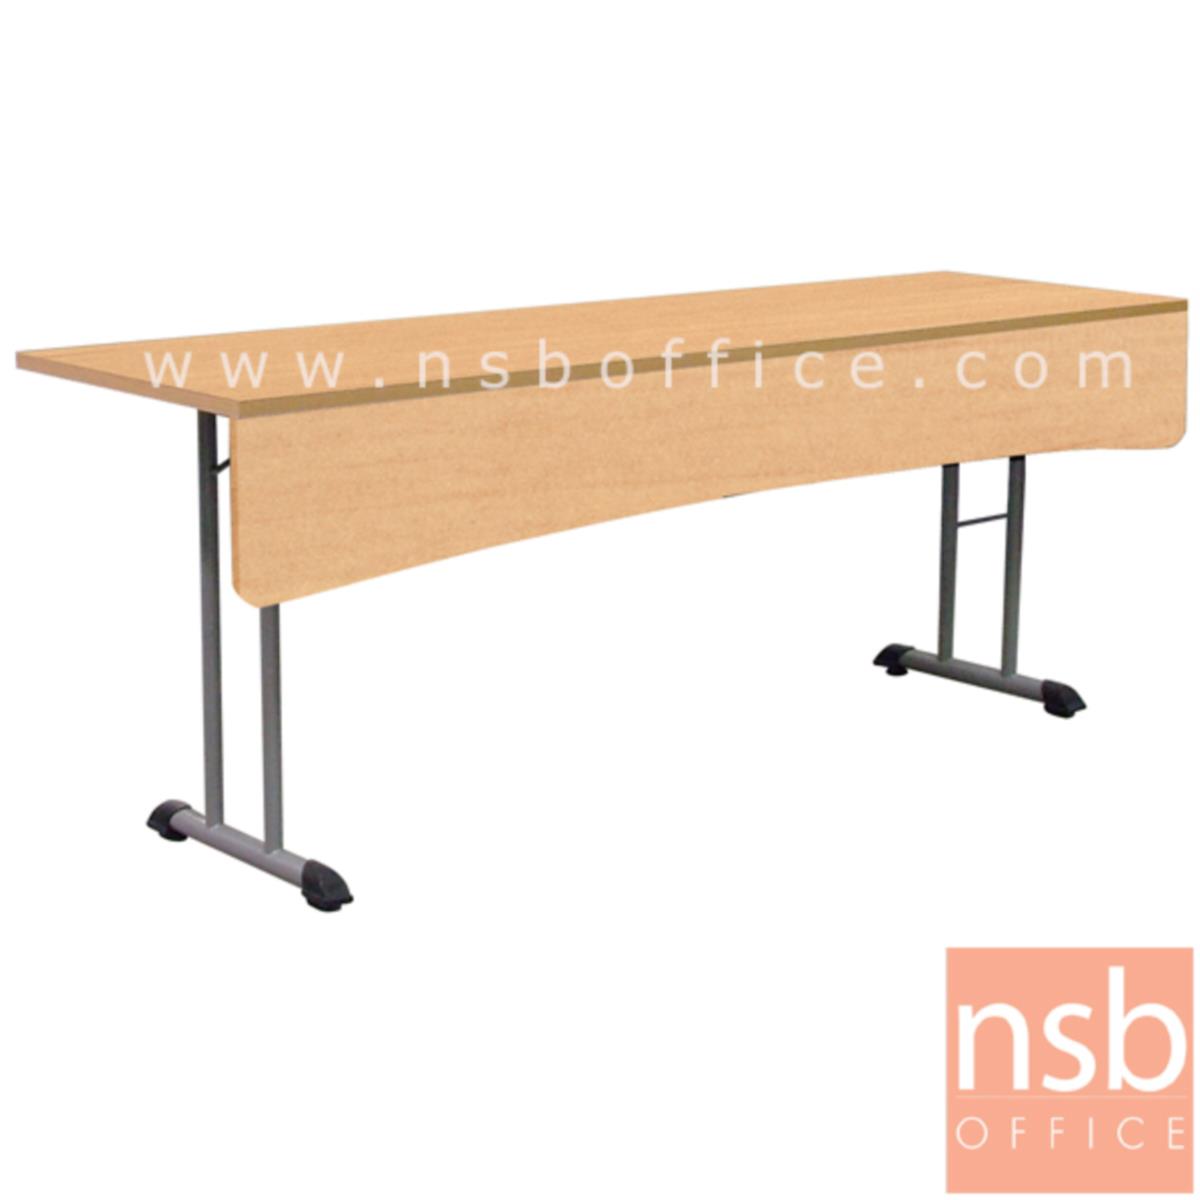 A18A077:โต๊ะประชุมพับเก็บได้ รุ่น MN-1206 ขนาด 120W ,150W ,180W*60D ,80D cm. ขาเหล็กเสาคู่ทรงตัวที พร้อมบังโป๊ไม้  